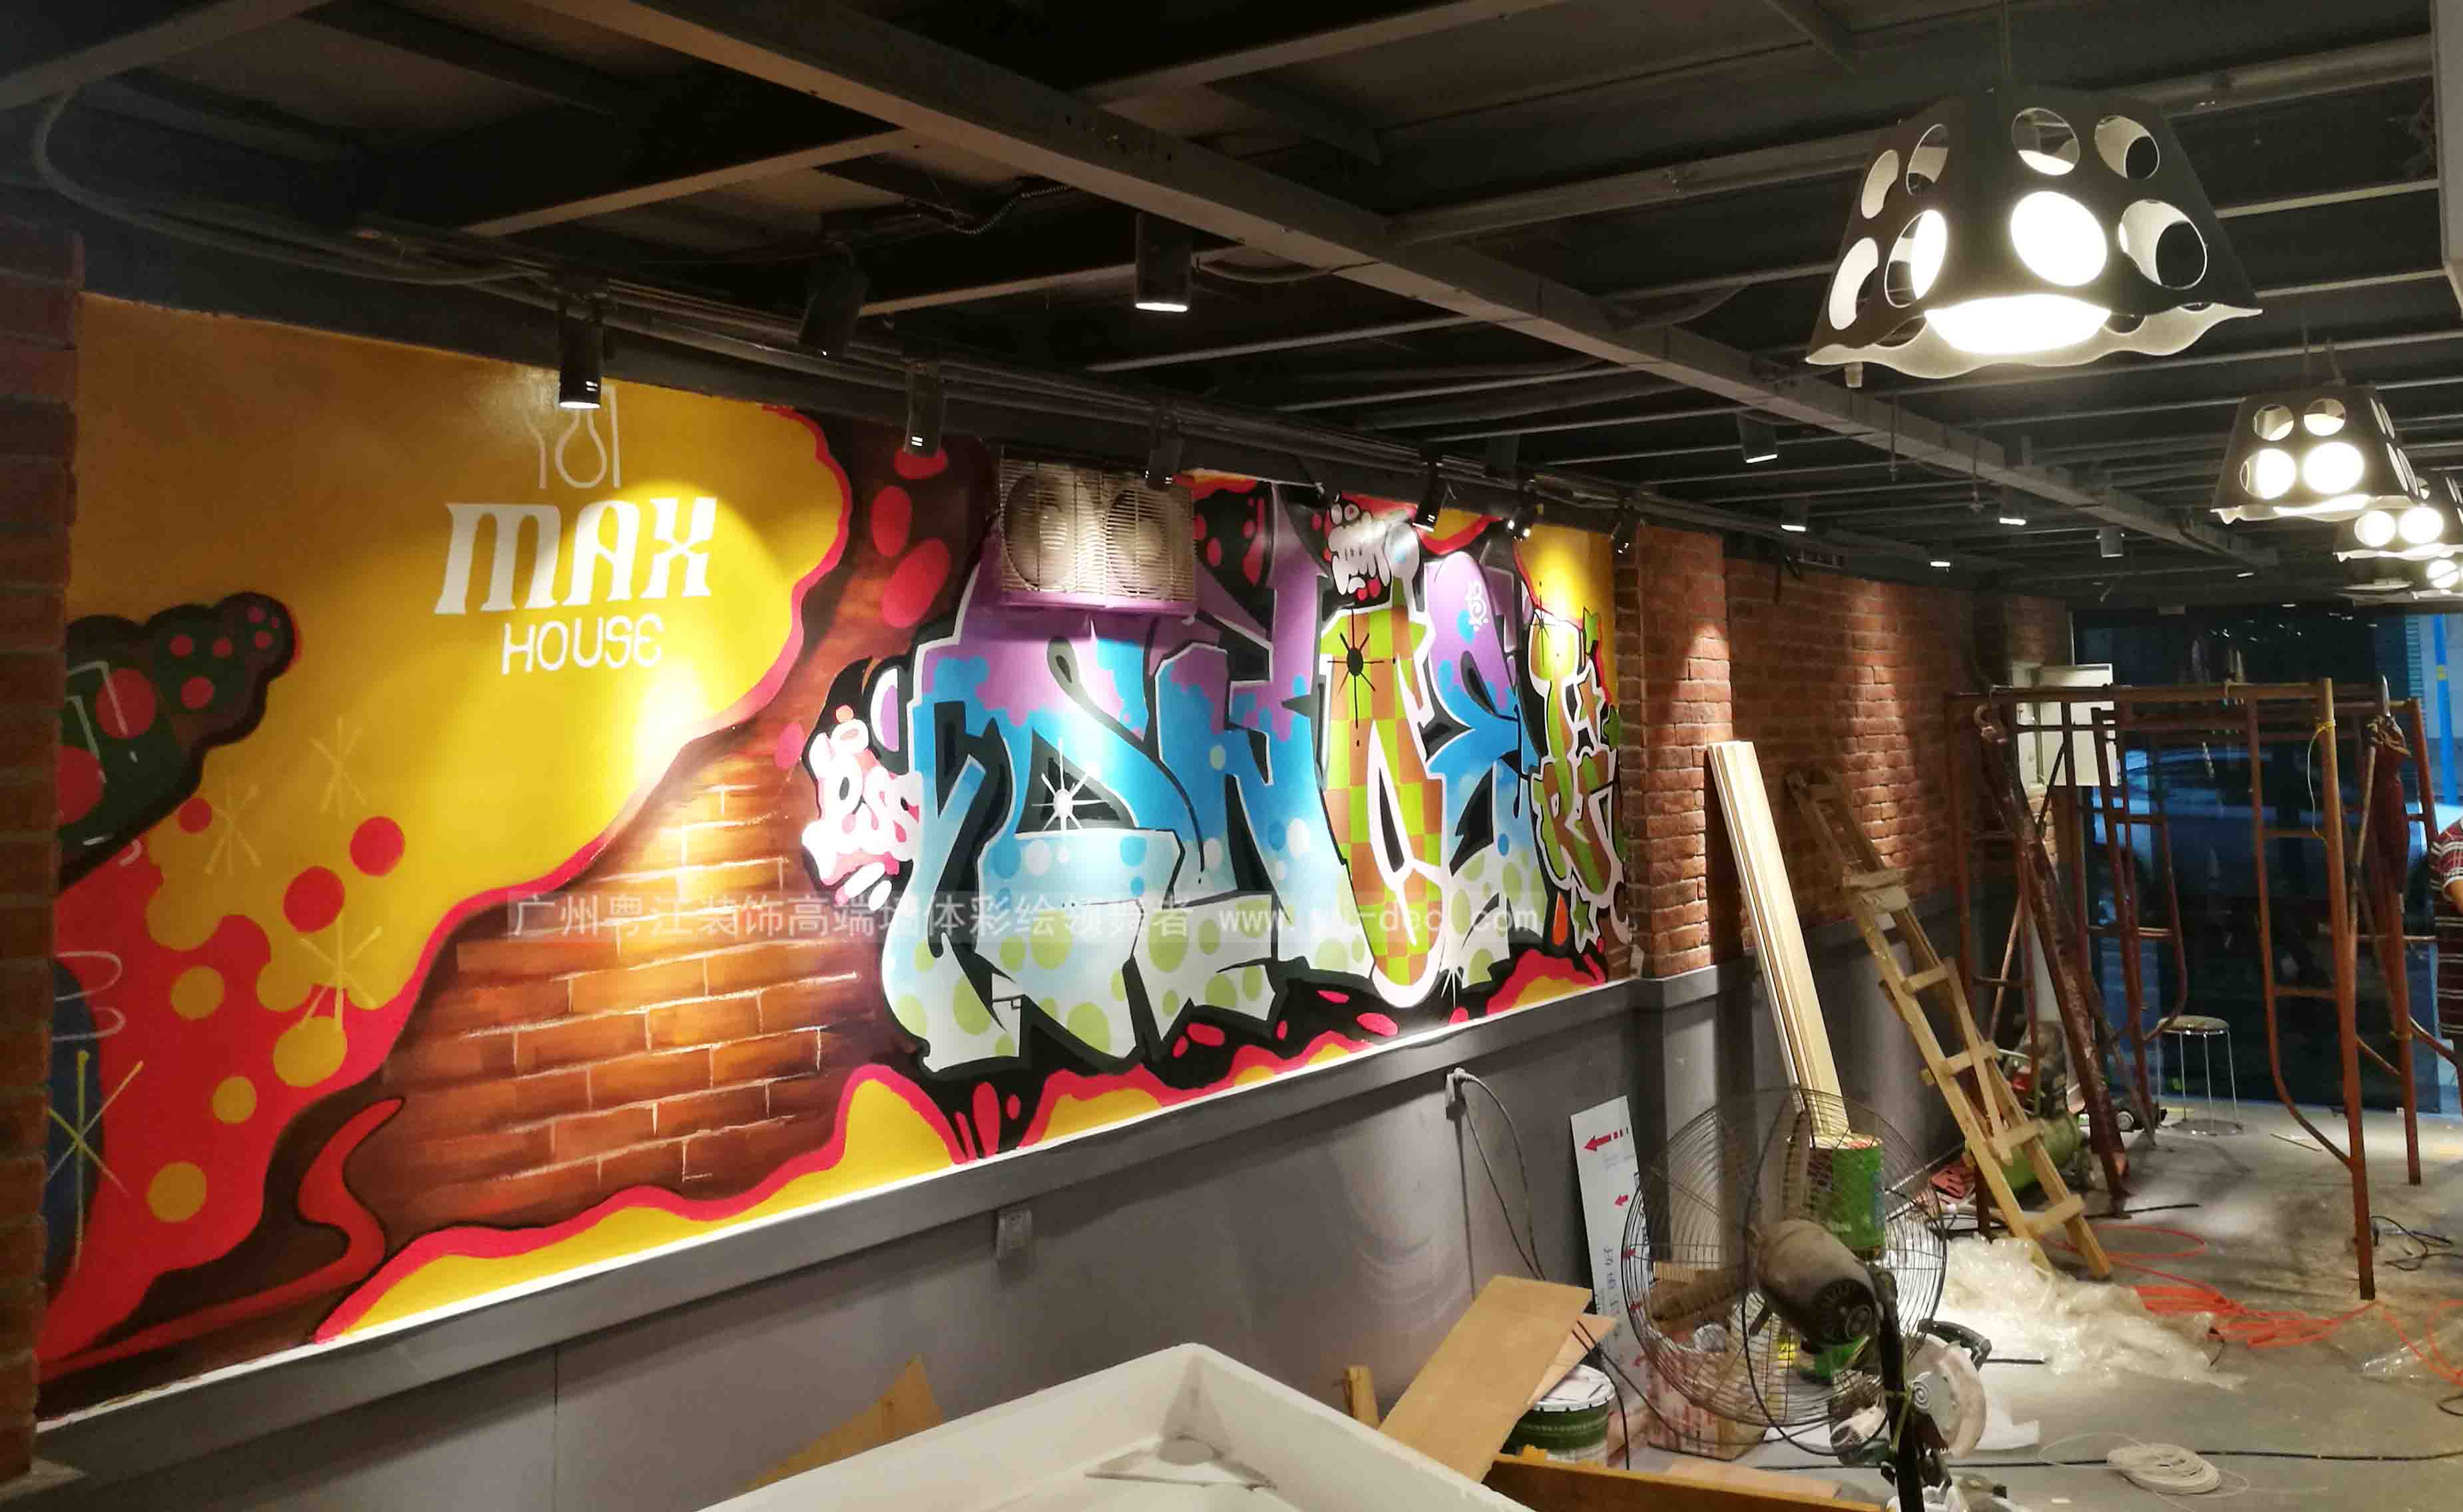 汉堡糕点主题餐厅墙体彩绘壁画亮丽色彩涂鸦风